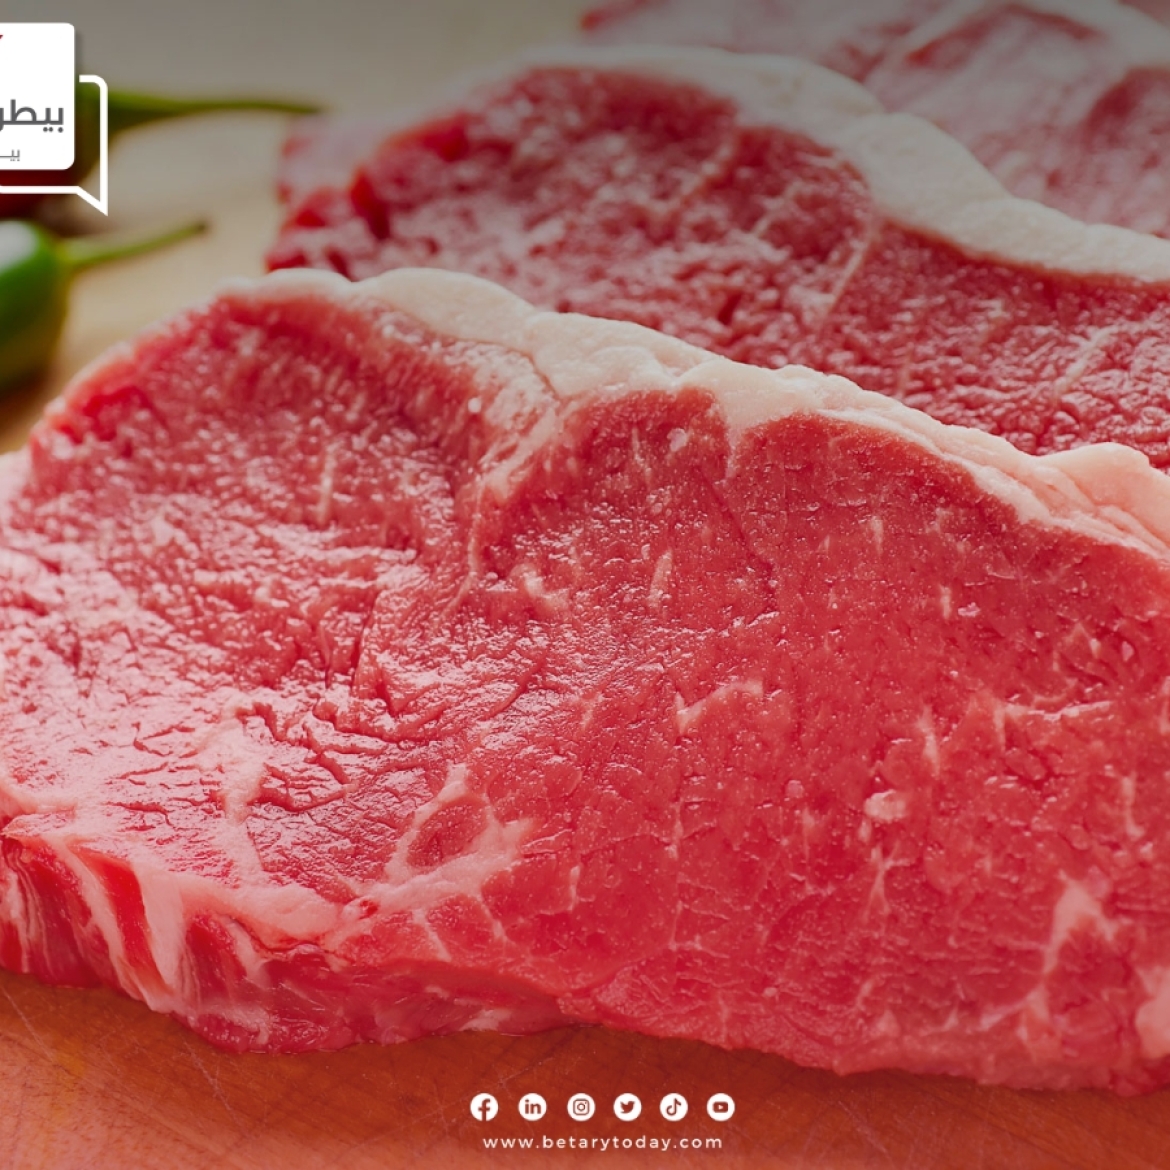 تباين أسعار اللحوم الحمراء البلدي والمستوردة اليوم الإثنين في الأسواق